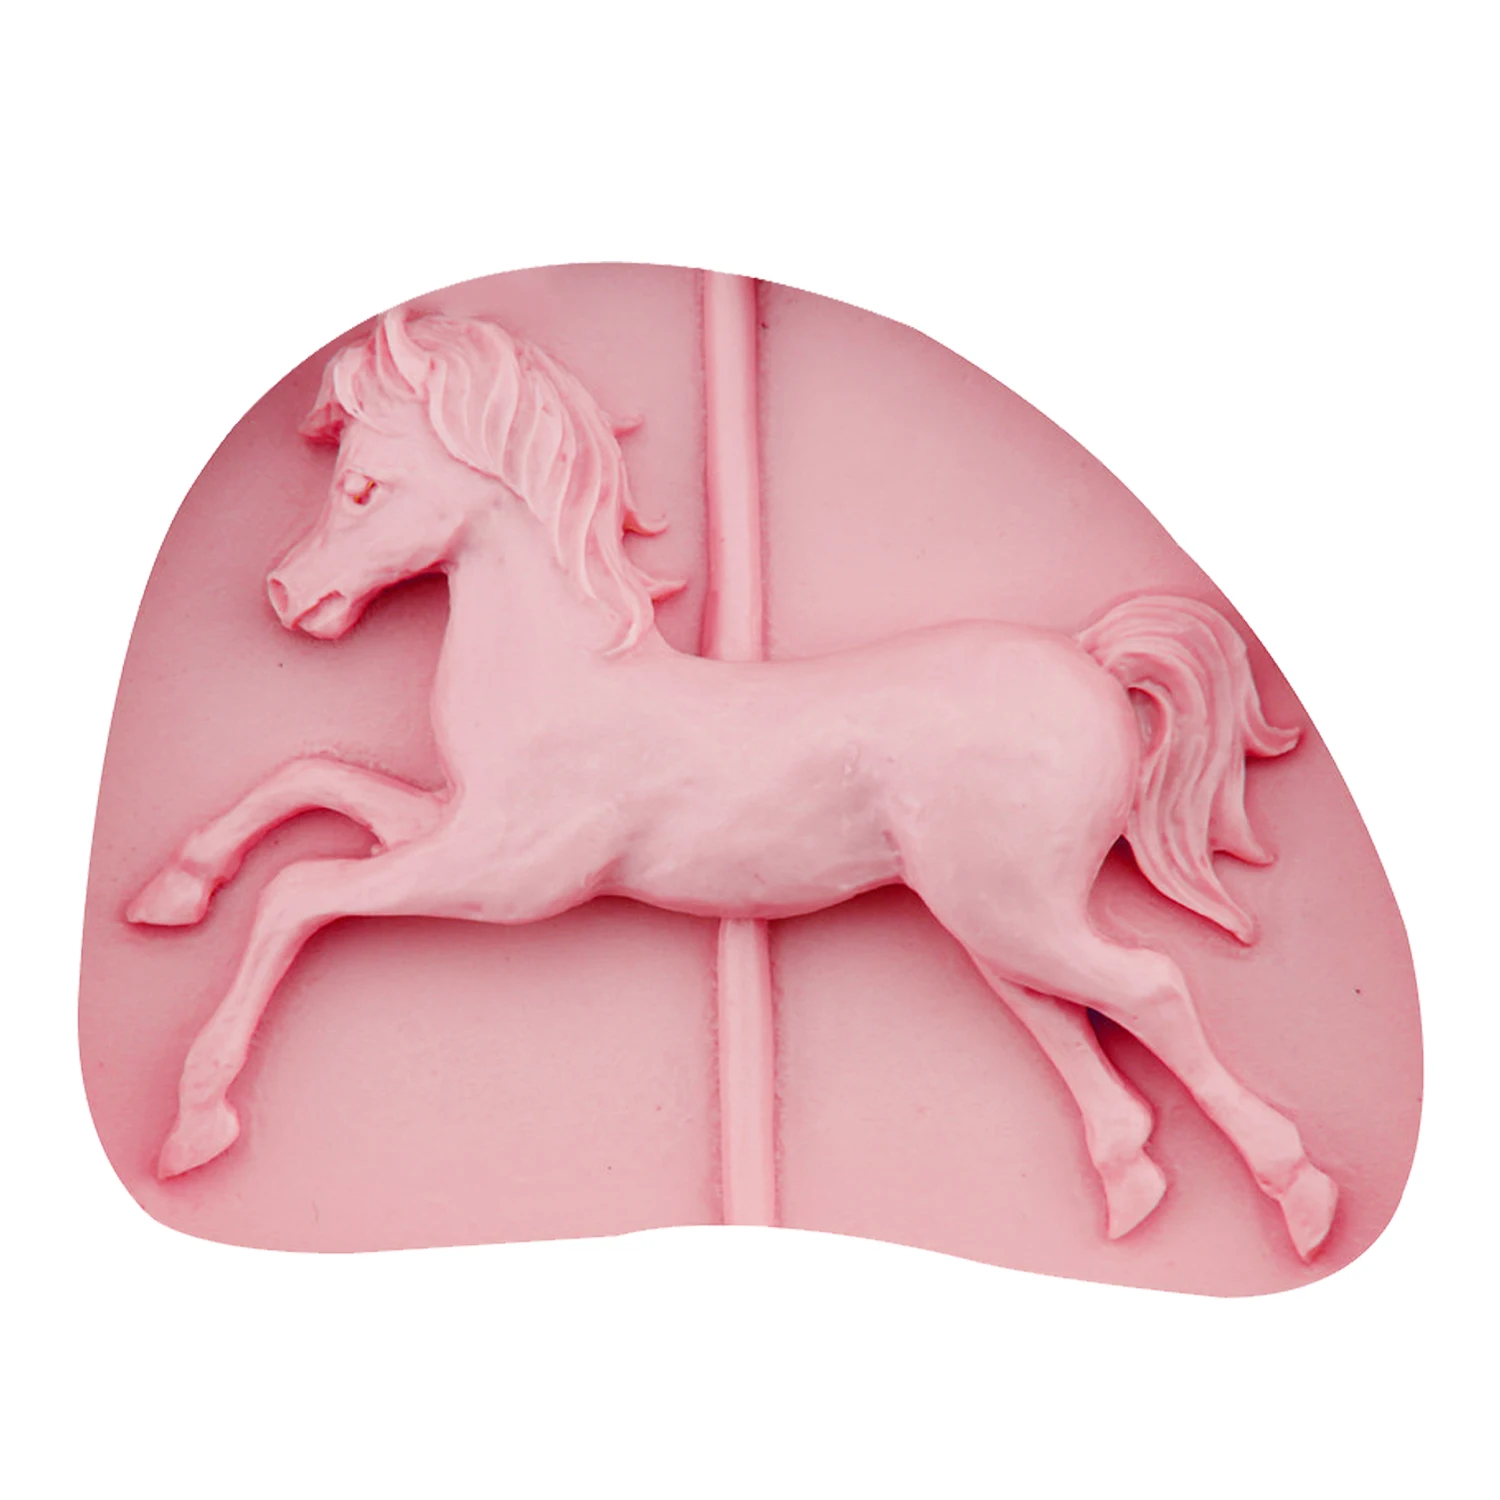 M0552 троянская лошадь форма силиконовая форма для выпечки формы торта Patry инструменты для украшения торта